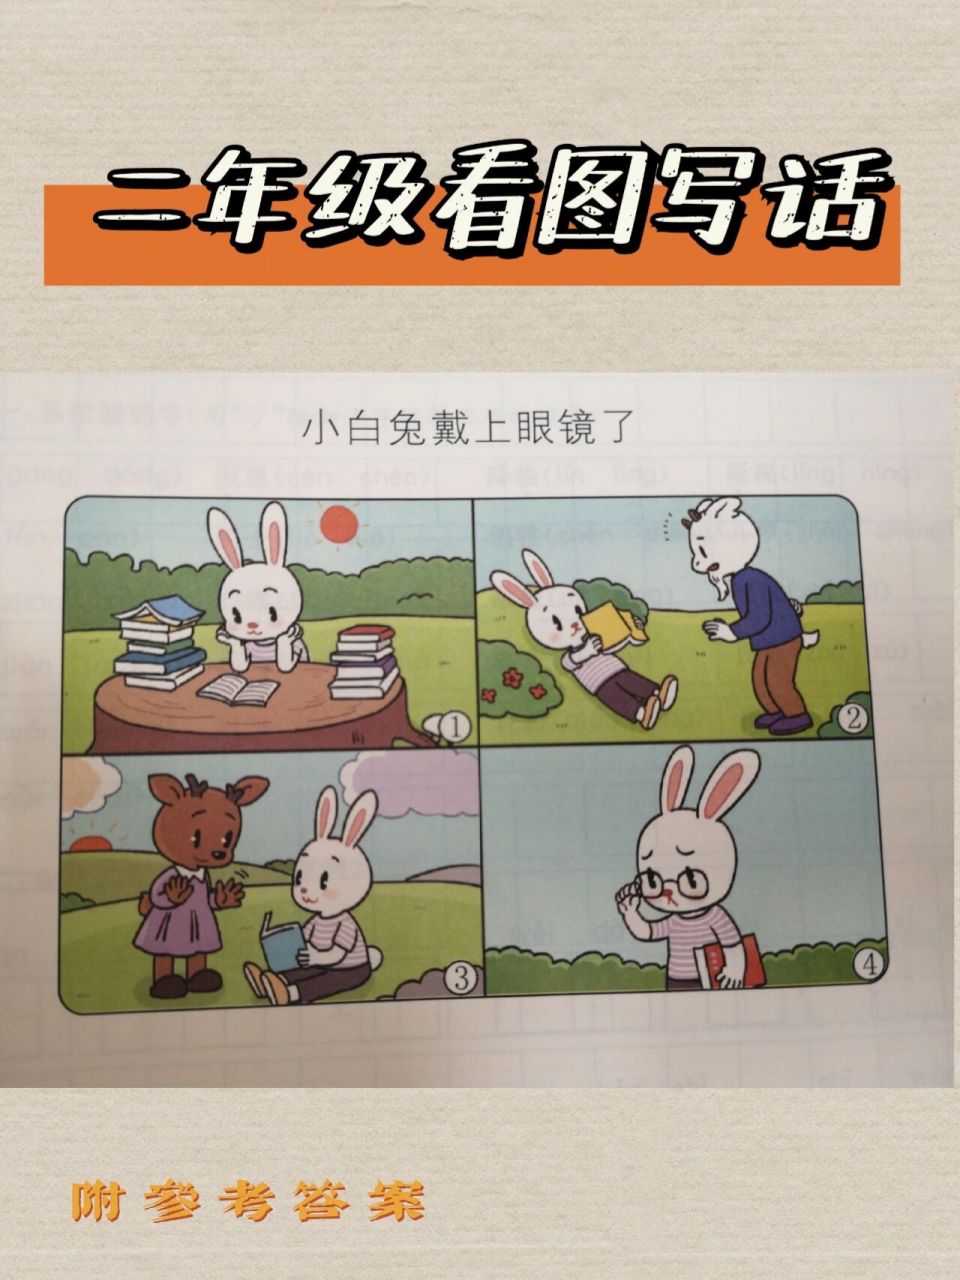 【看图写话】题目—小白兔戴上了眼镜了 97这是一篇4幅图组成的看图